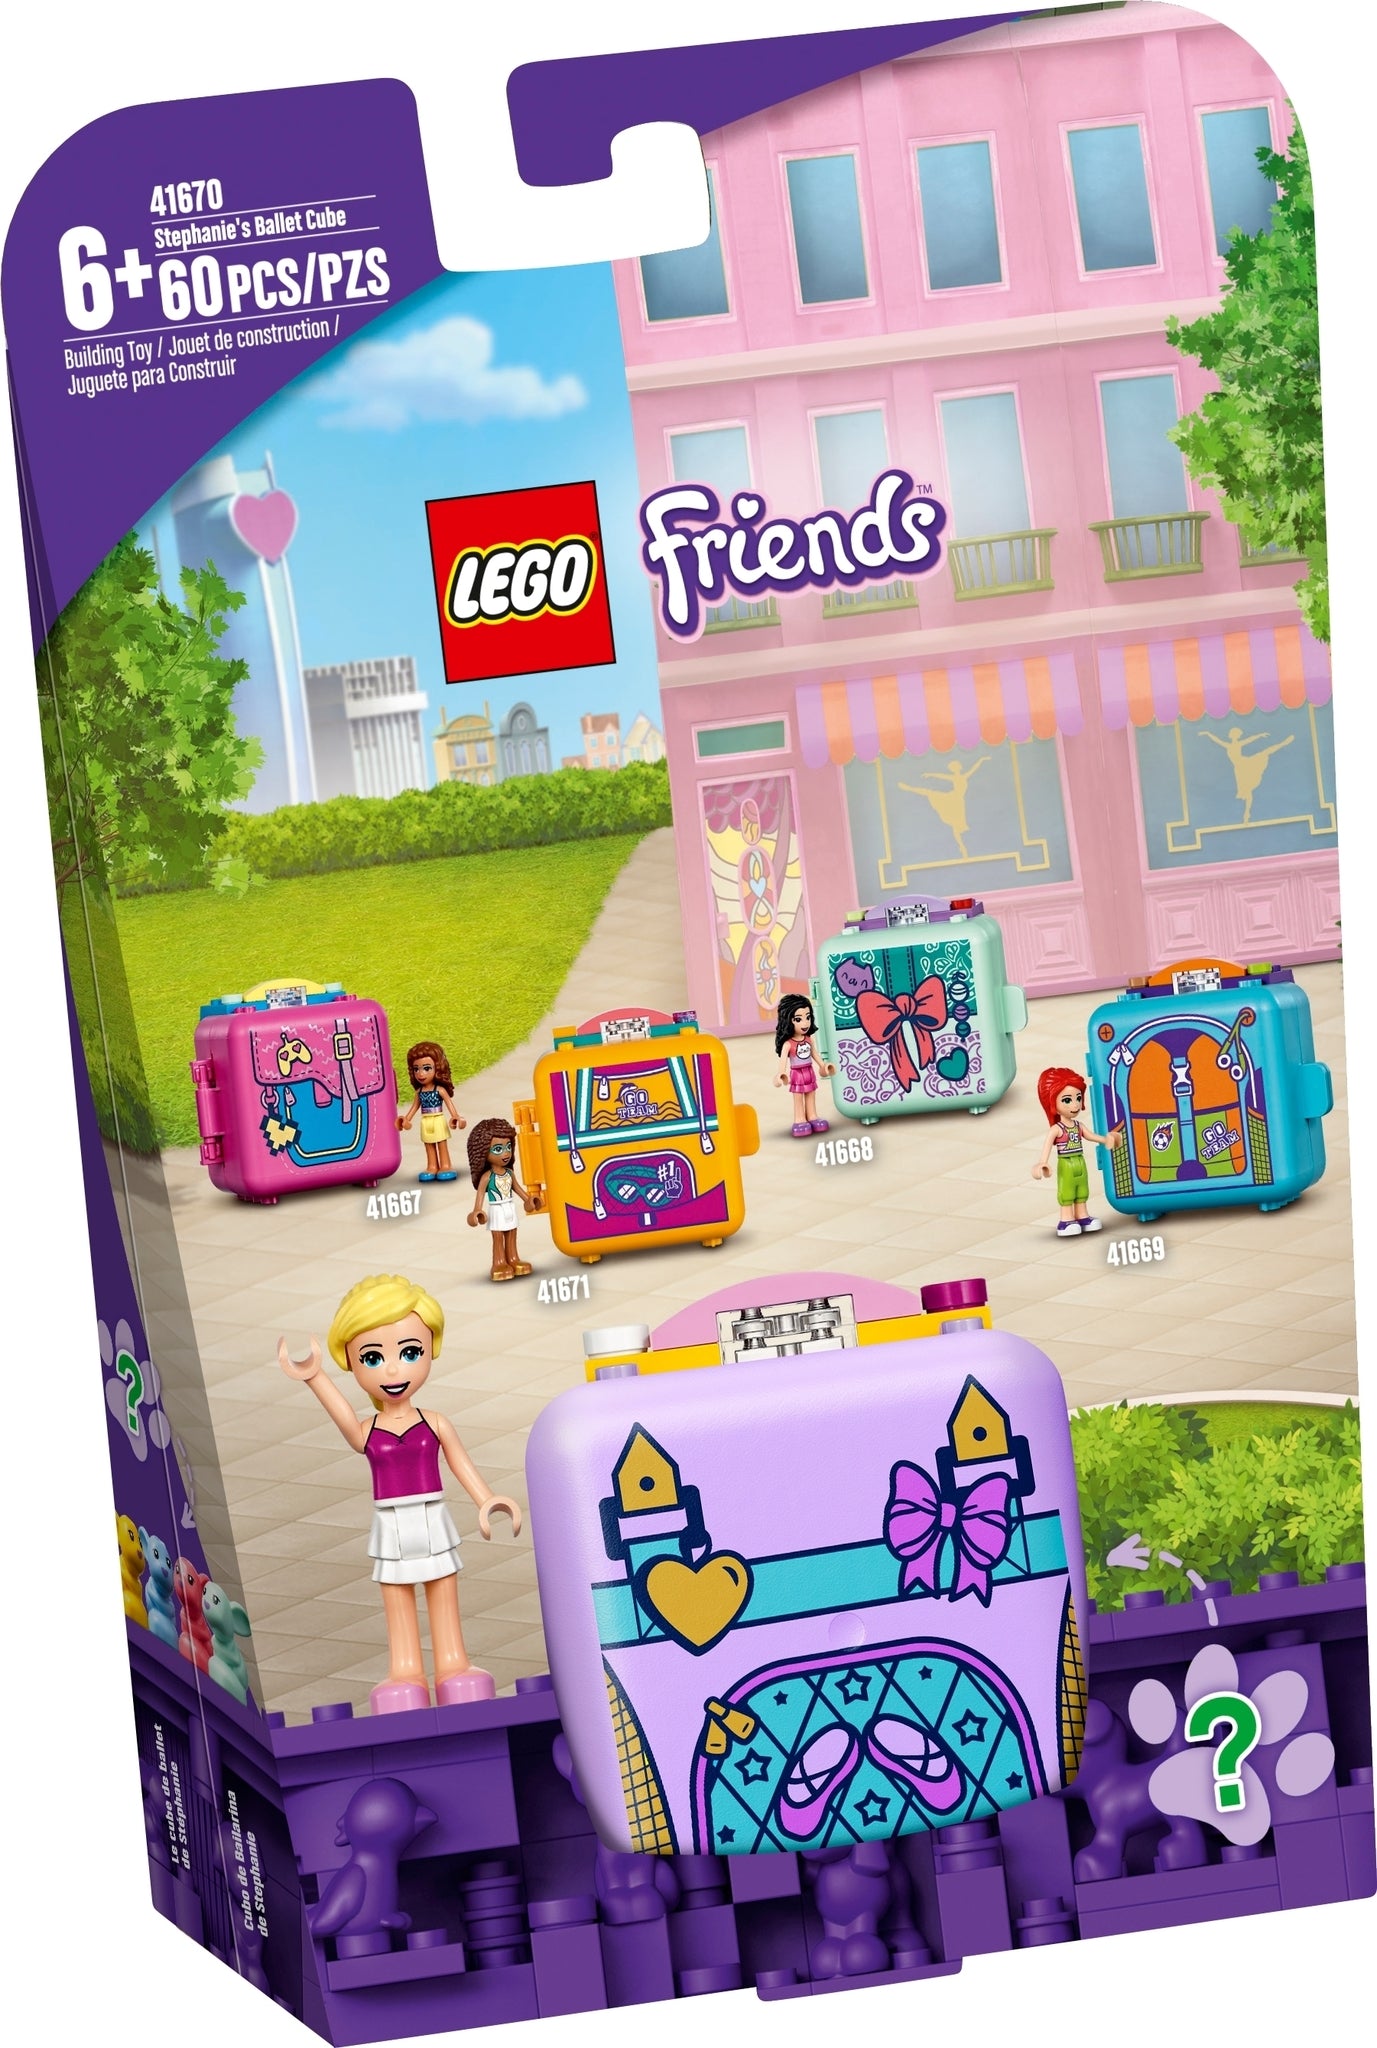 41670 LEGO Friends - Il Cubo del Balletto di Stephanie